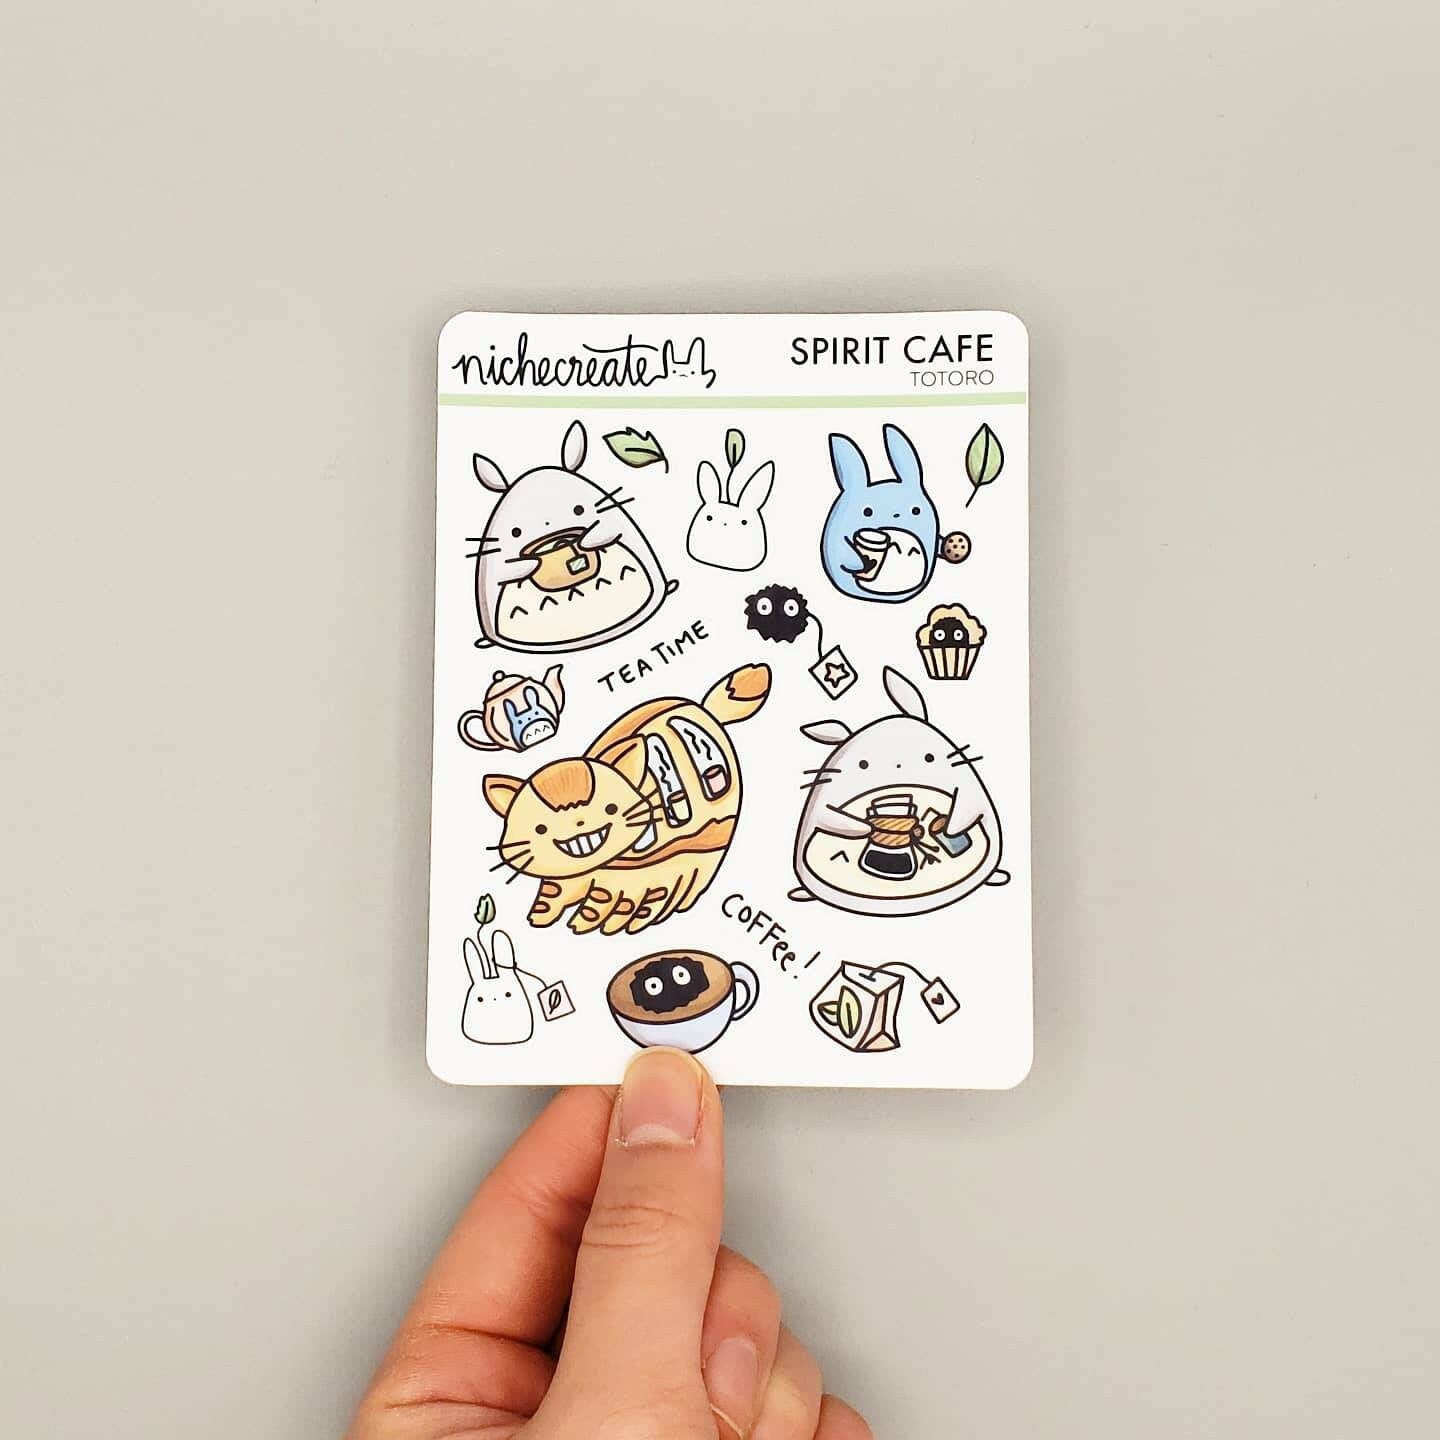 Spirit Cafe Planner Sticker Sheet (Inspired Art)